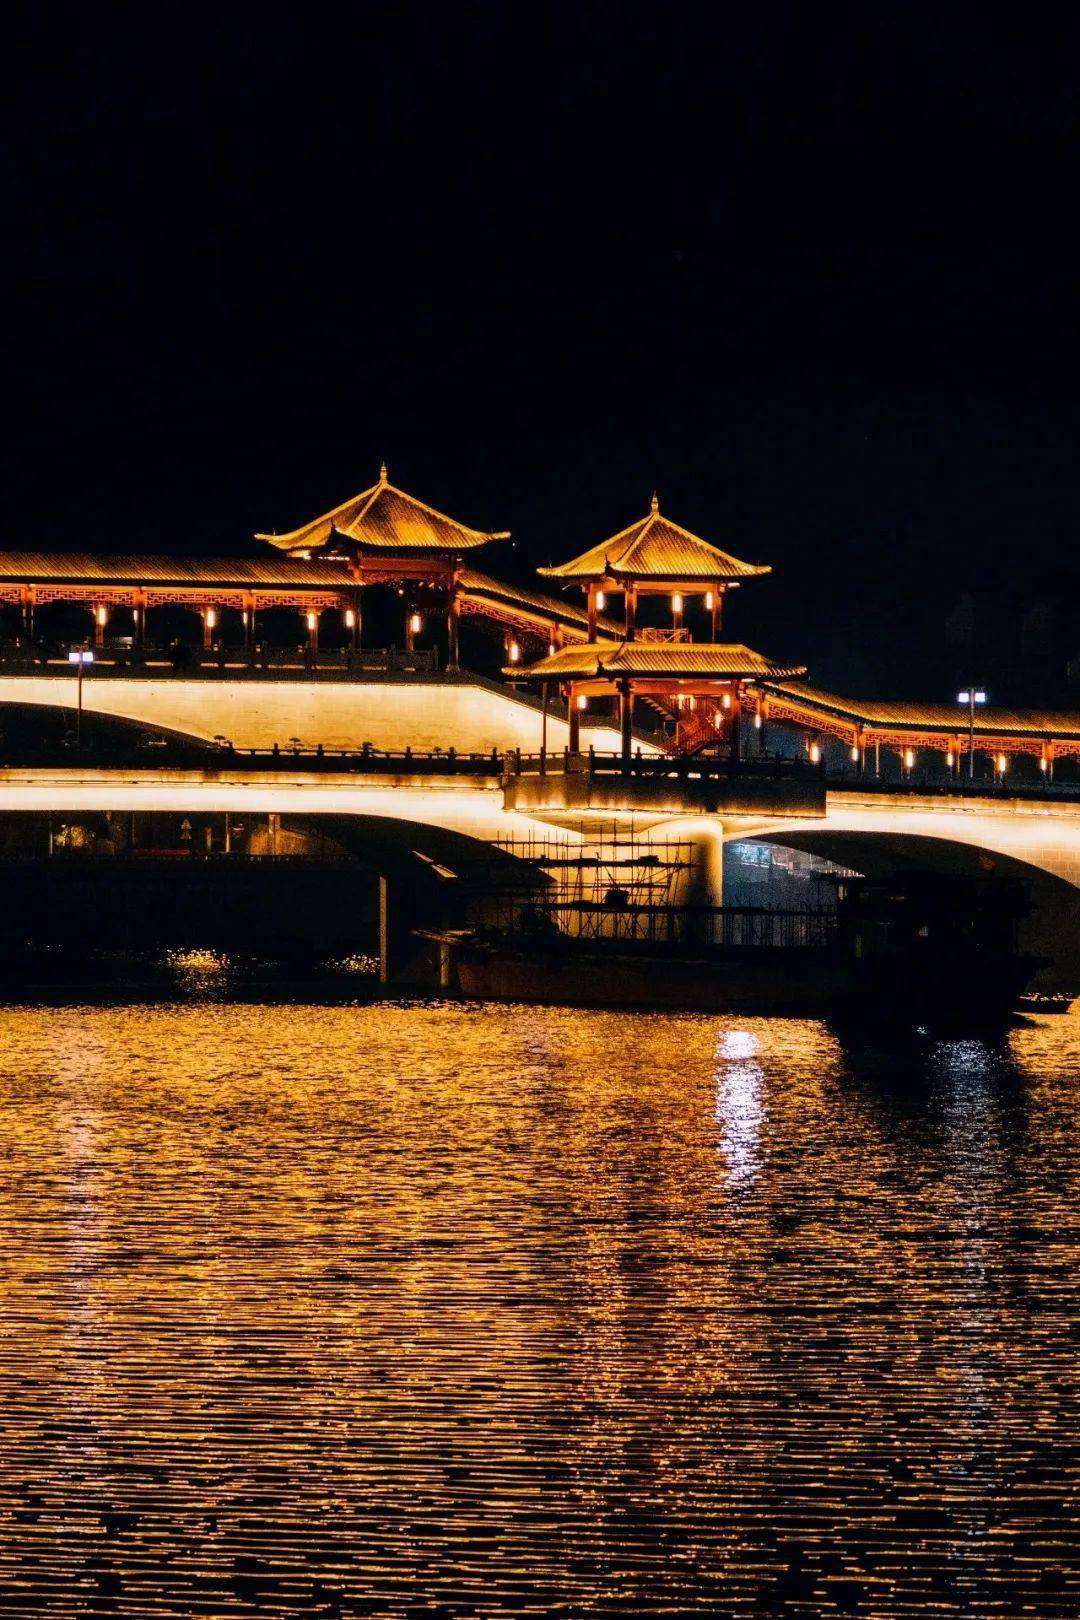 增城东门桥历史图片